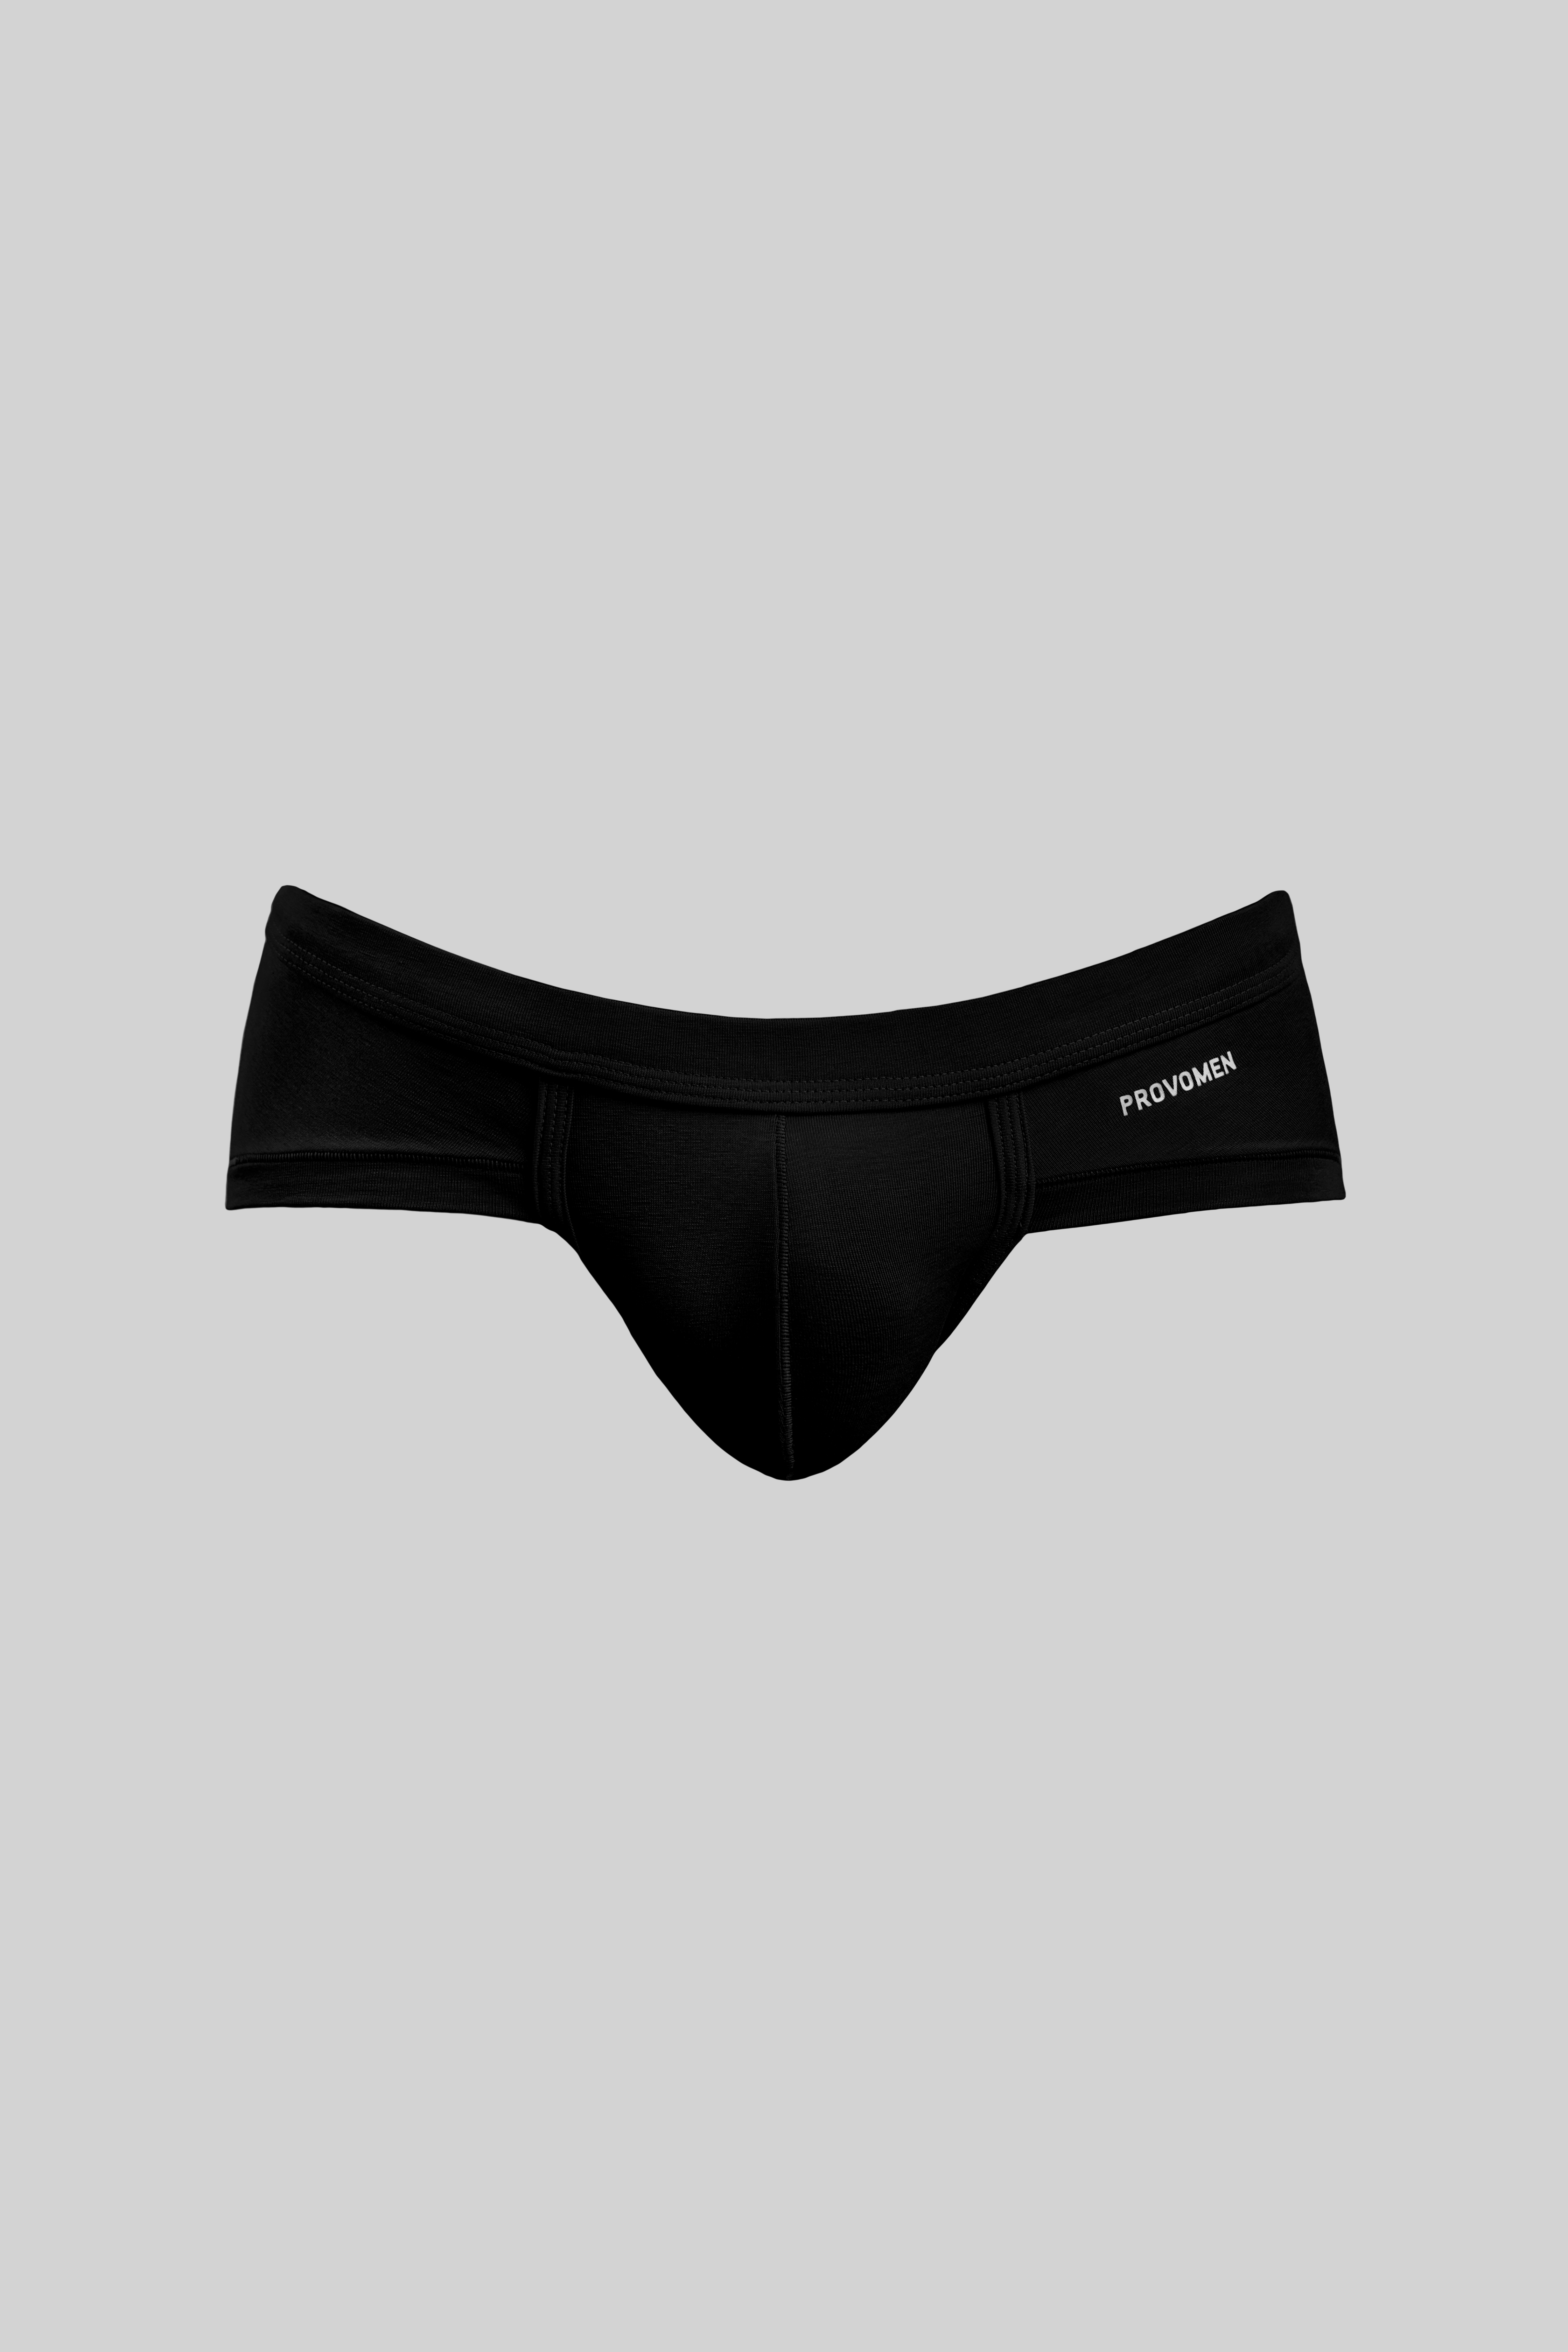 Hipster Briefs (Black) - official online store of men's underwear